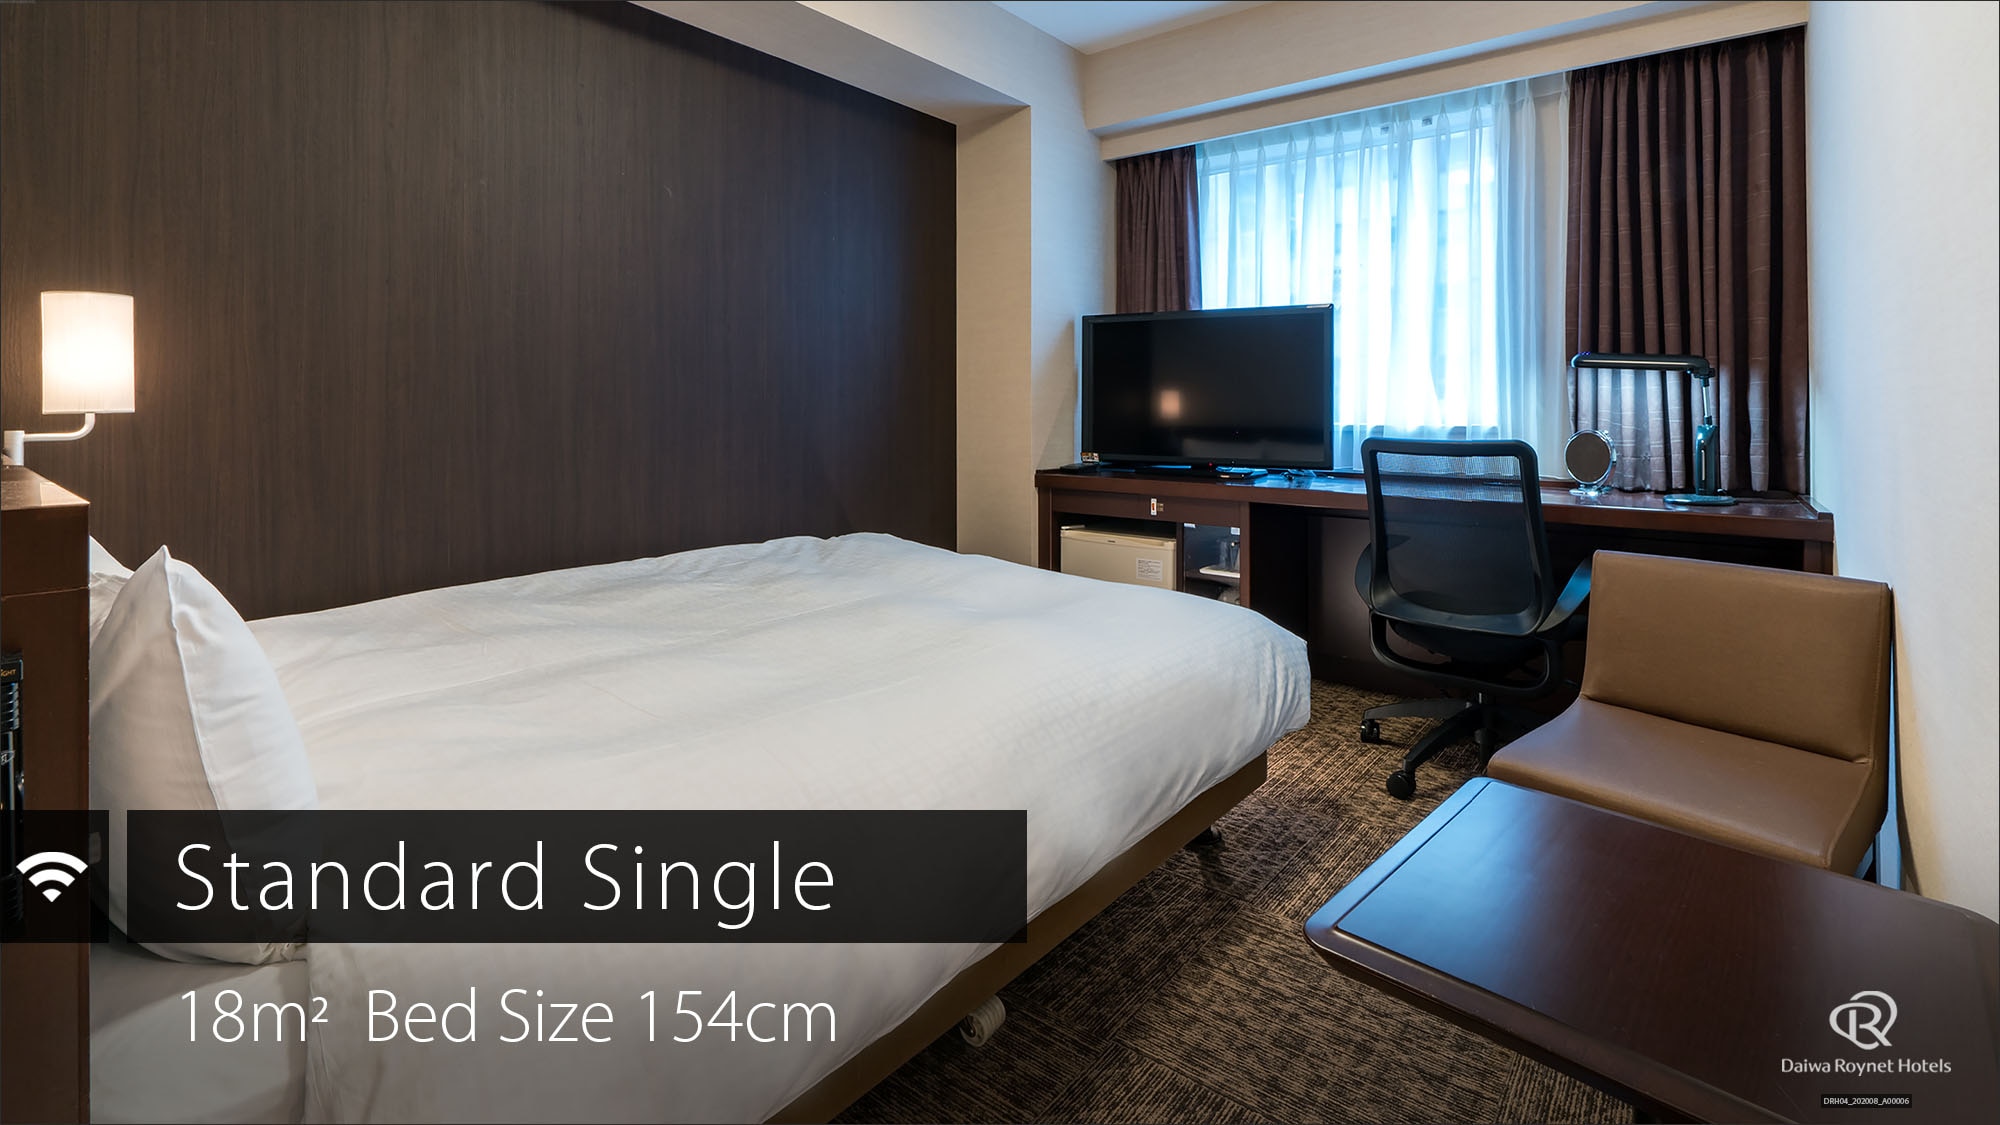 Standard single room